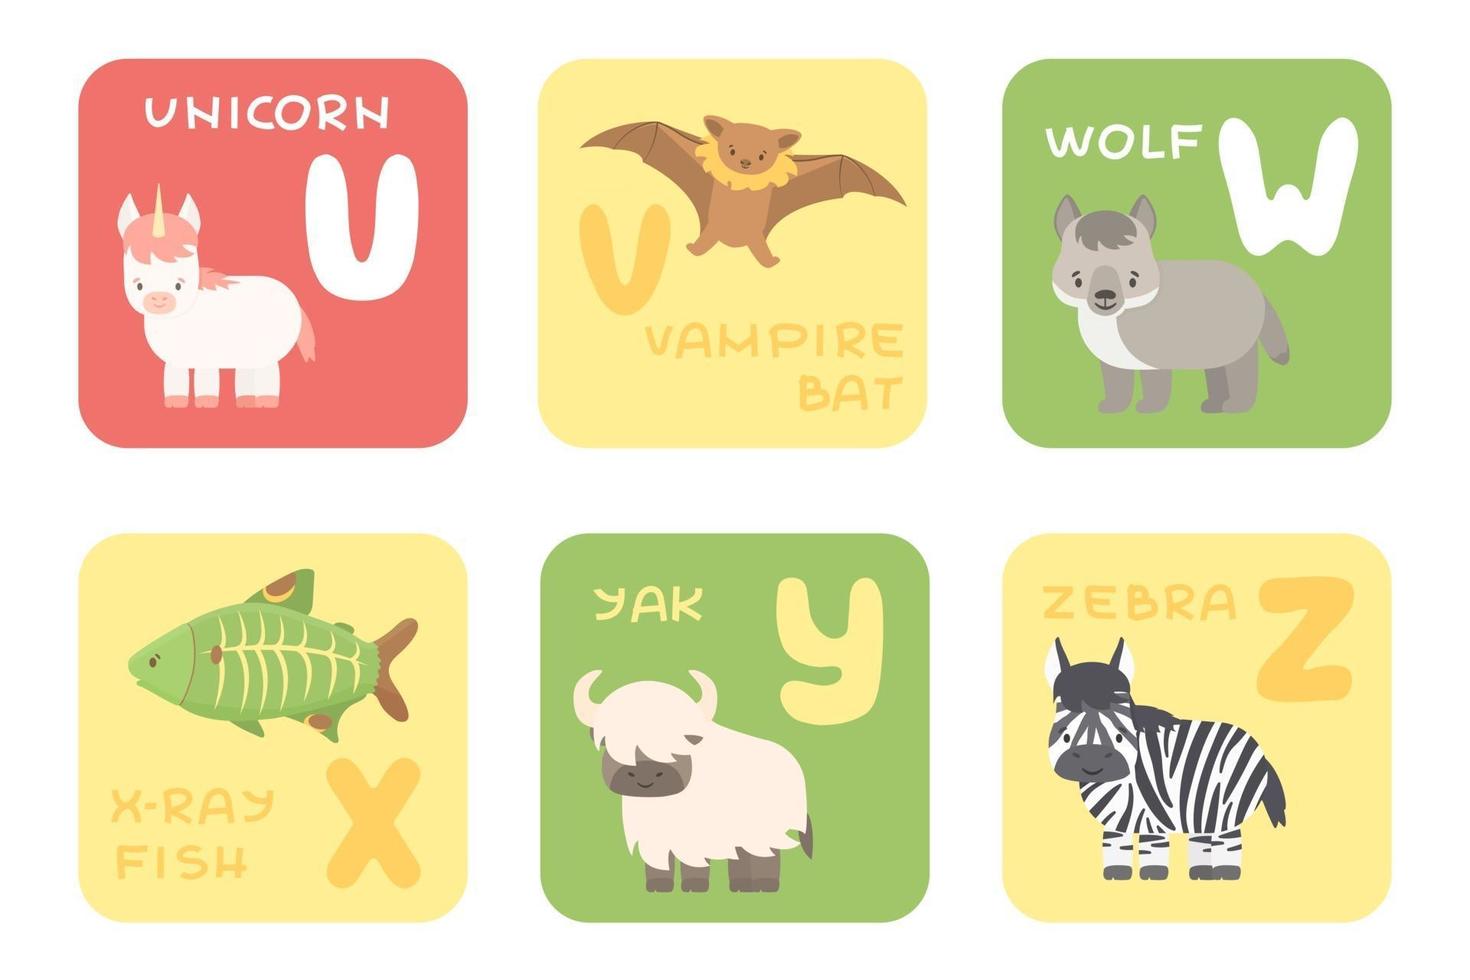 Vetor fofo uz zoo alfabeto isolado cartões educacionais com animais de desenho animado unicórnio vampiro morcego lobo raio x peixe iaque animais zebra em estilo simples